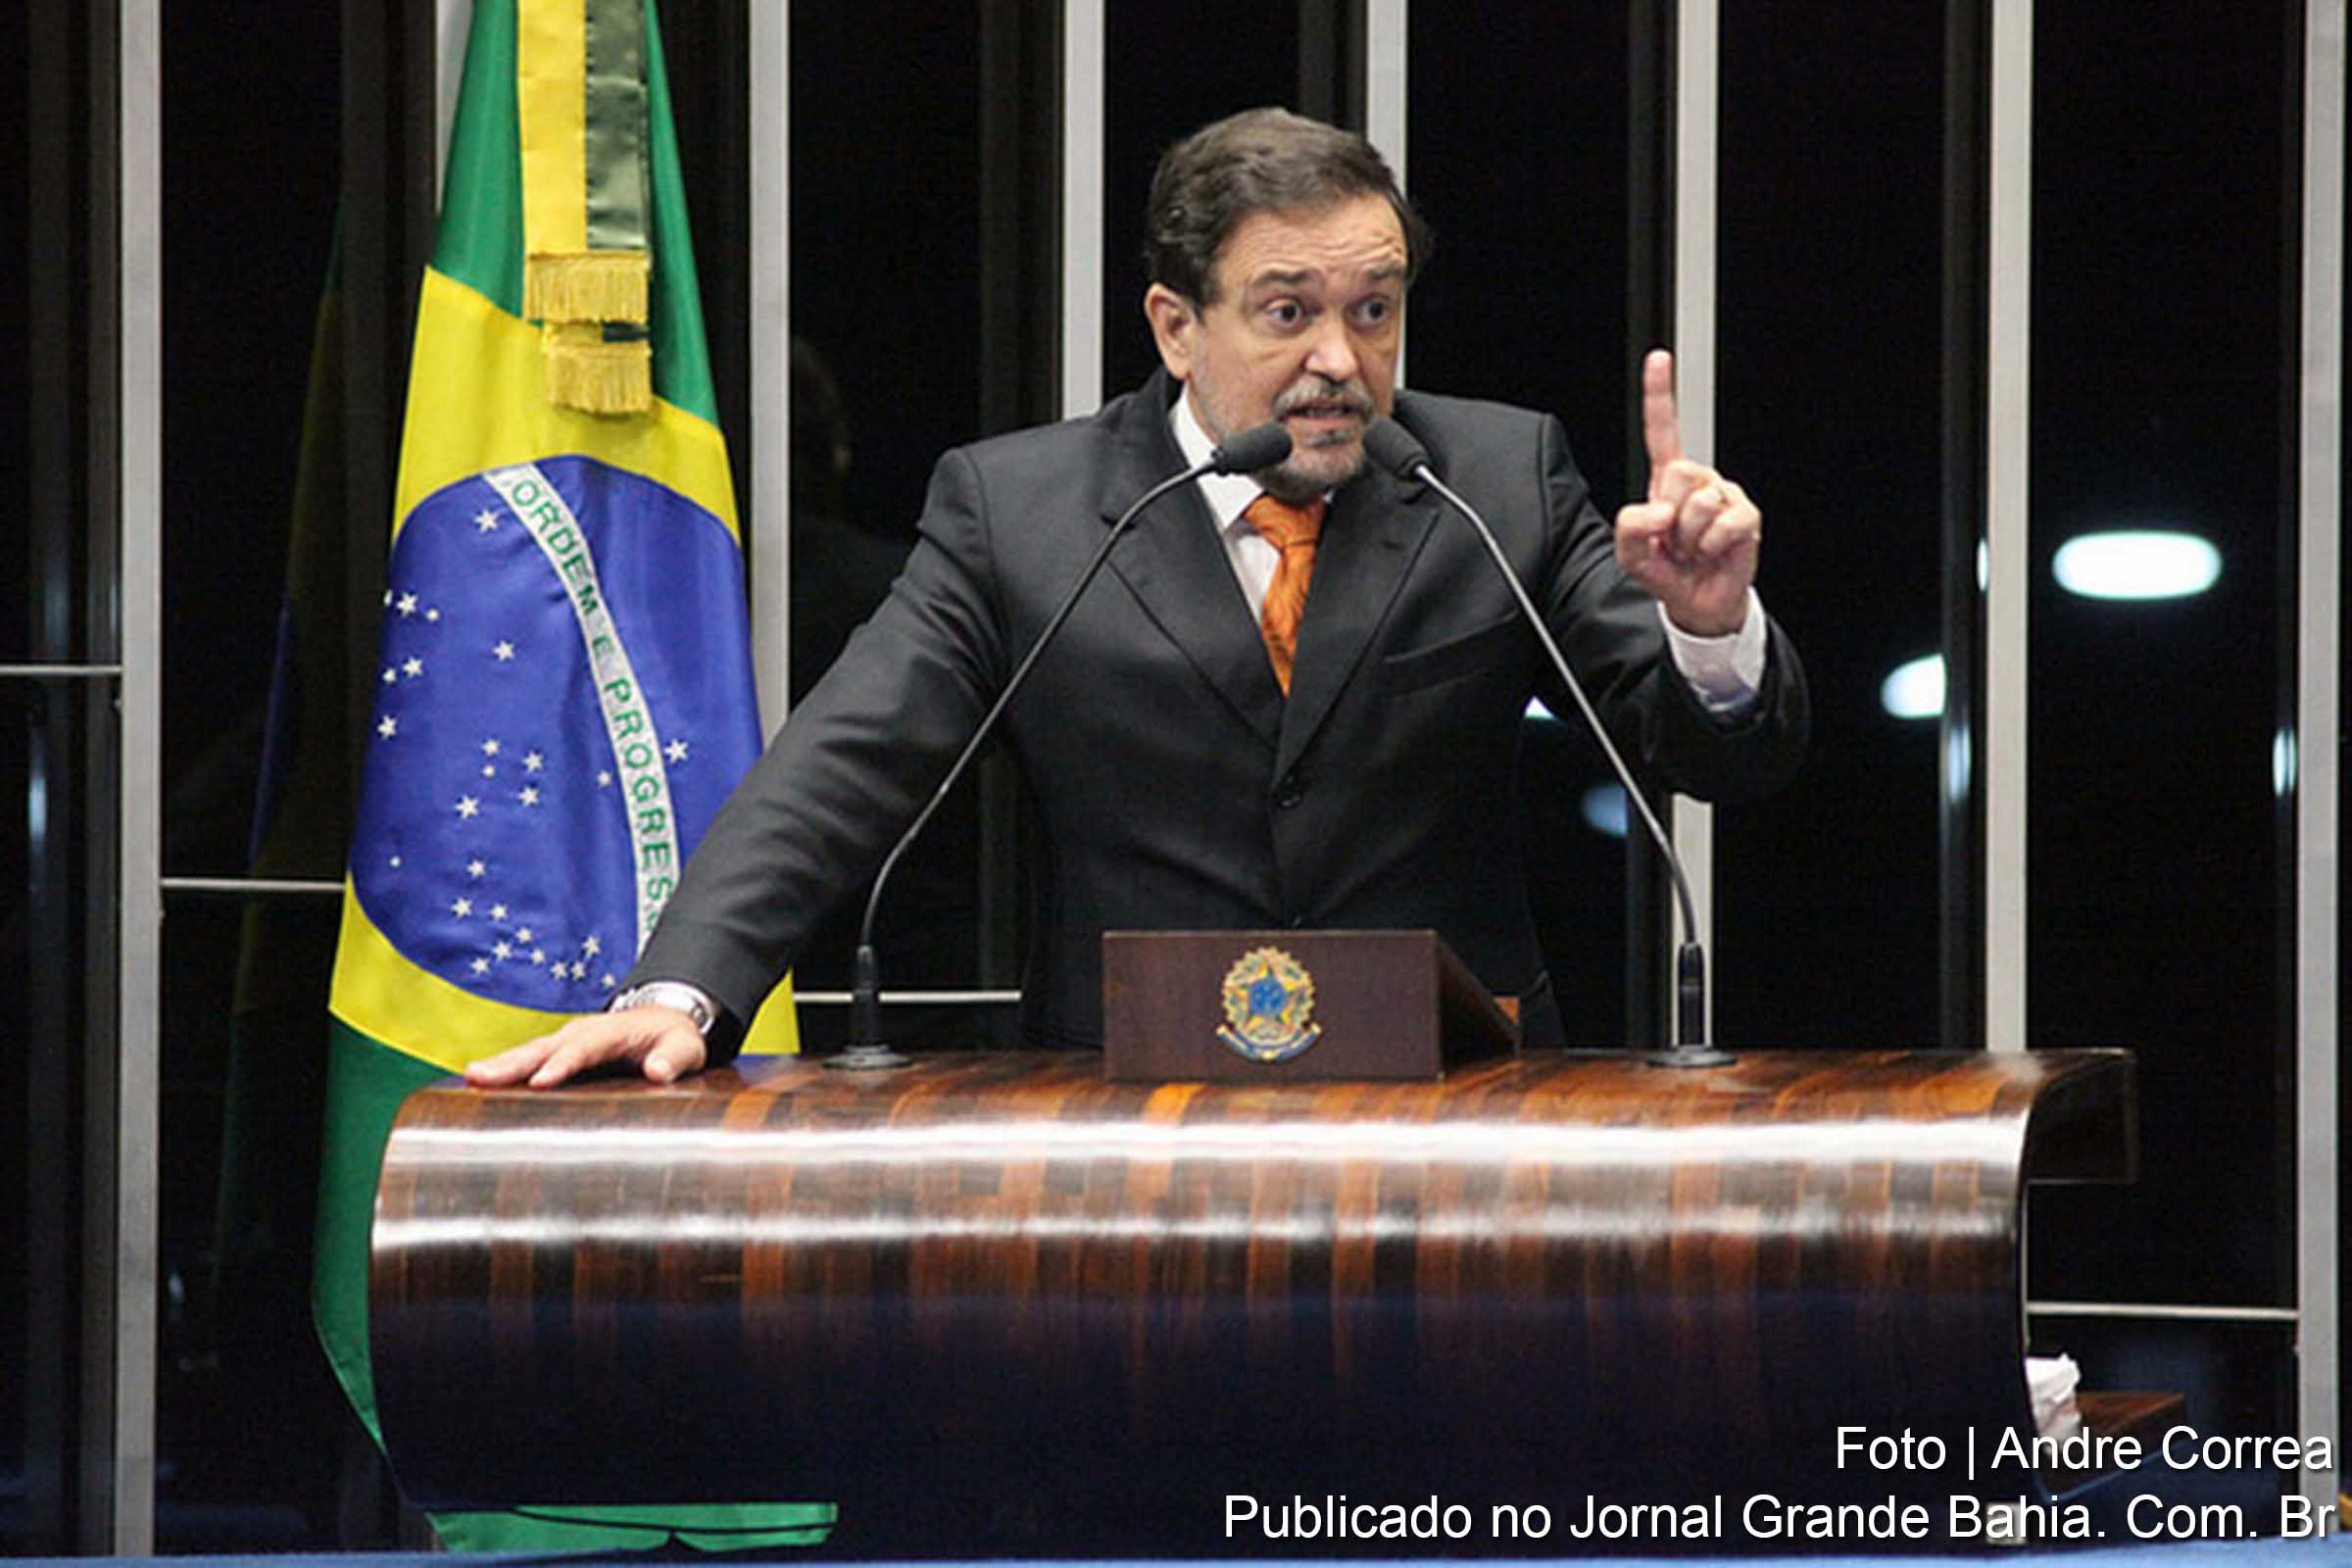 Senador Walter Pinheiro (PT/BA), vice-líder do Governo no Congresso Nacional.